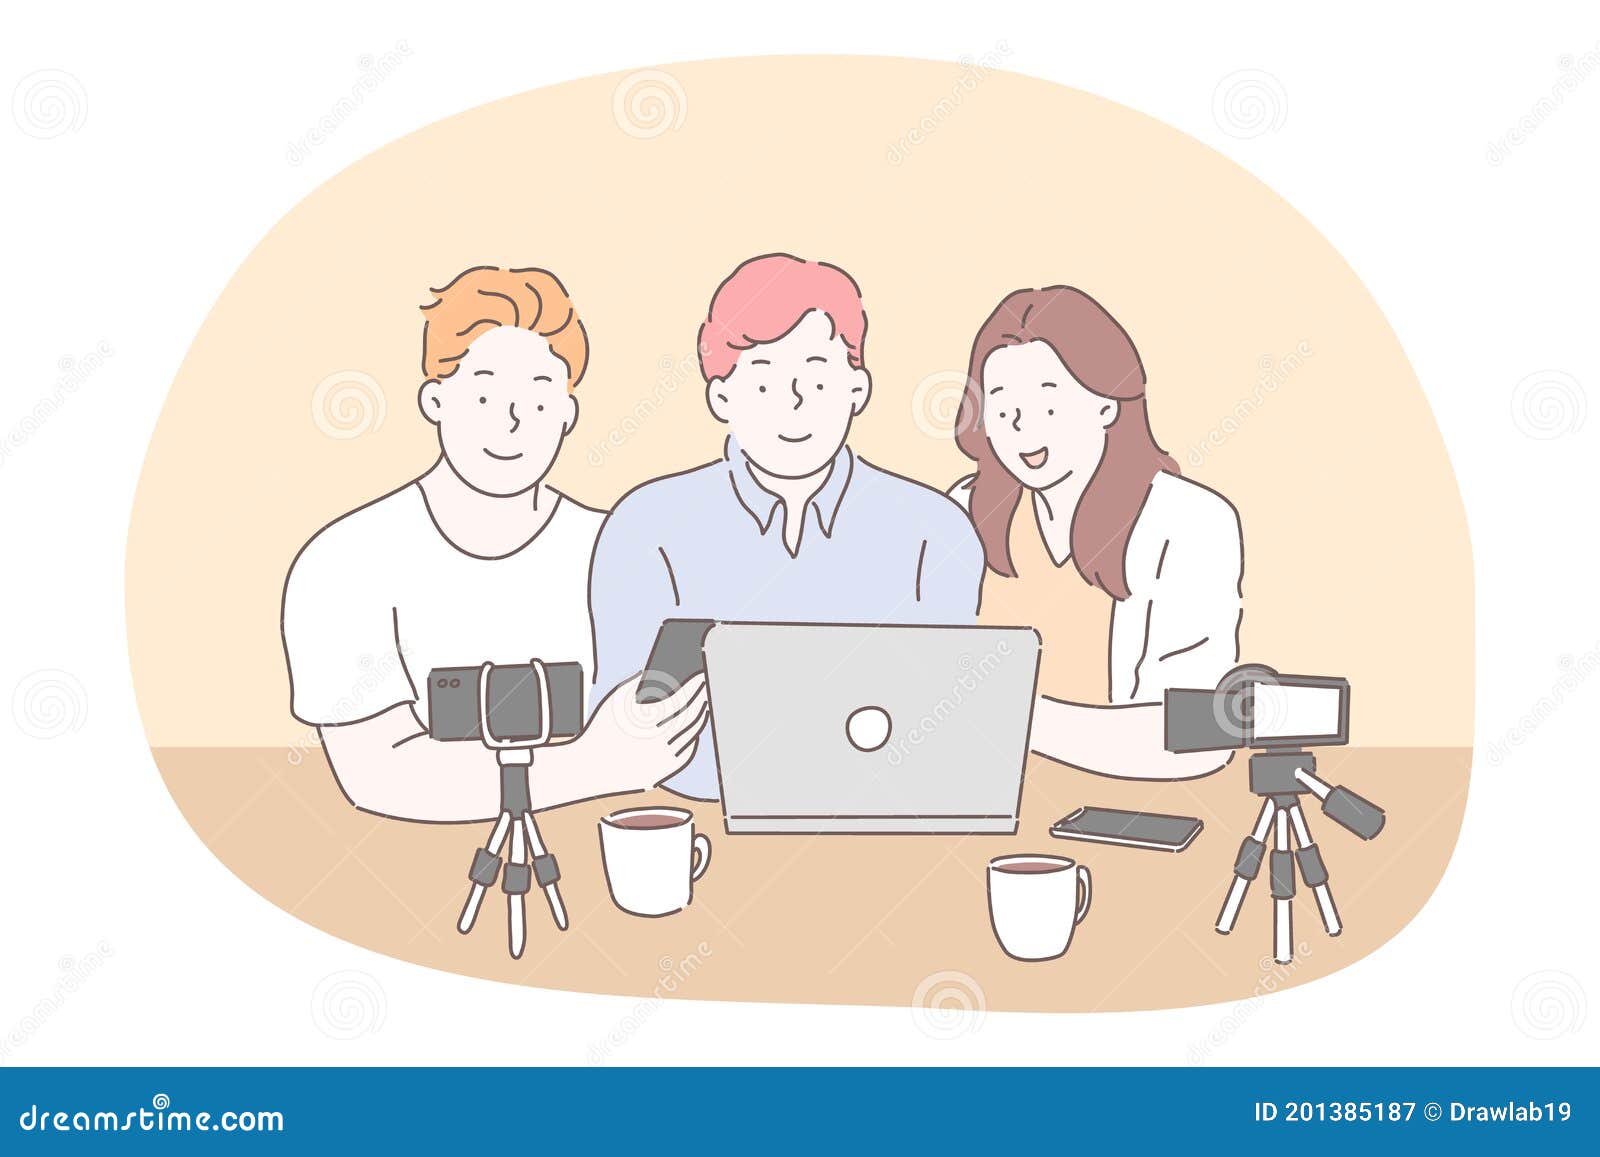 blogging, vlogging, sharing video content online concept